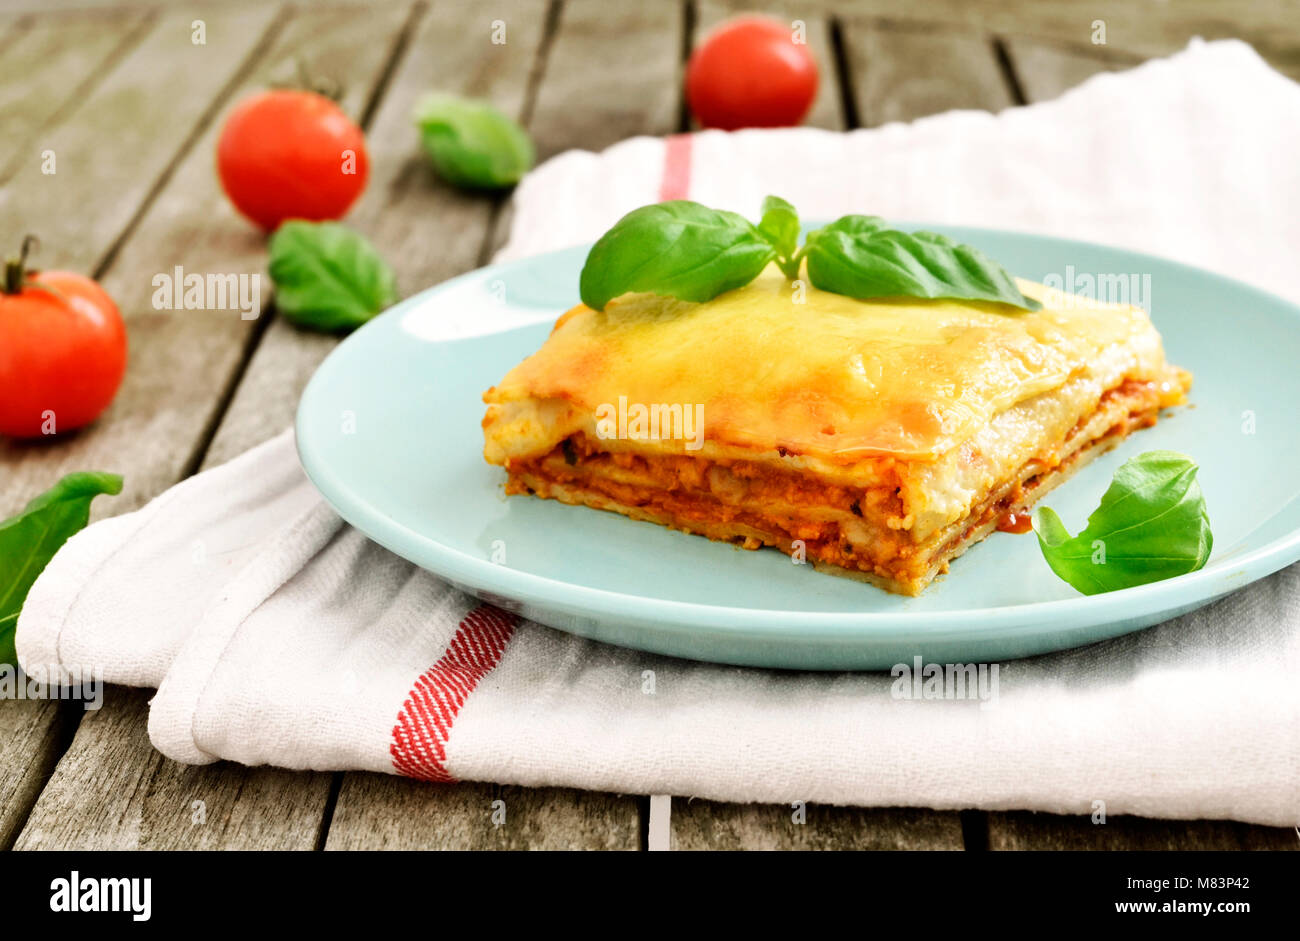 Carni fresche lasagne, lasagne alla bolognese, piatto di pasta su una tavola di legno con una decorazione foglia di basilico. Cucina Italiana. Foto Stock